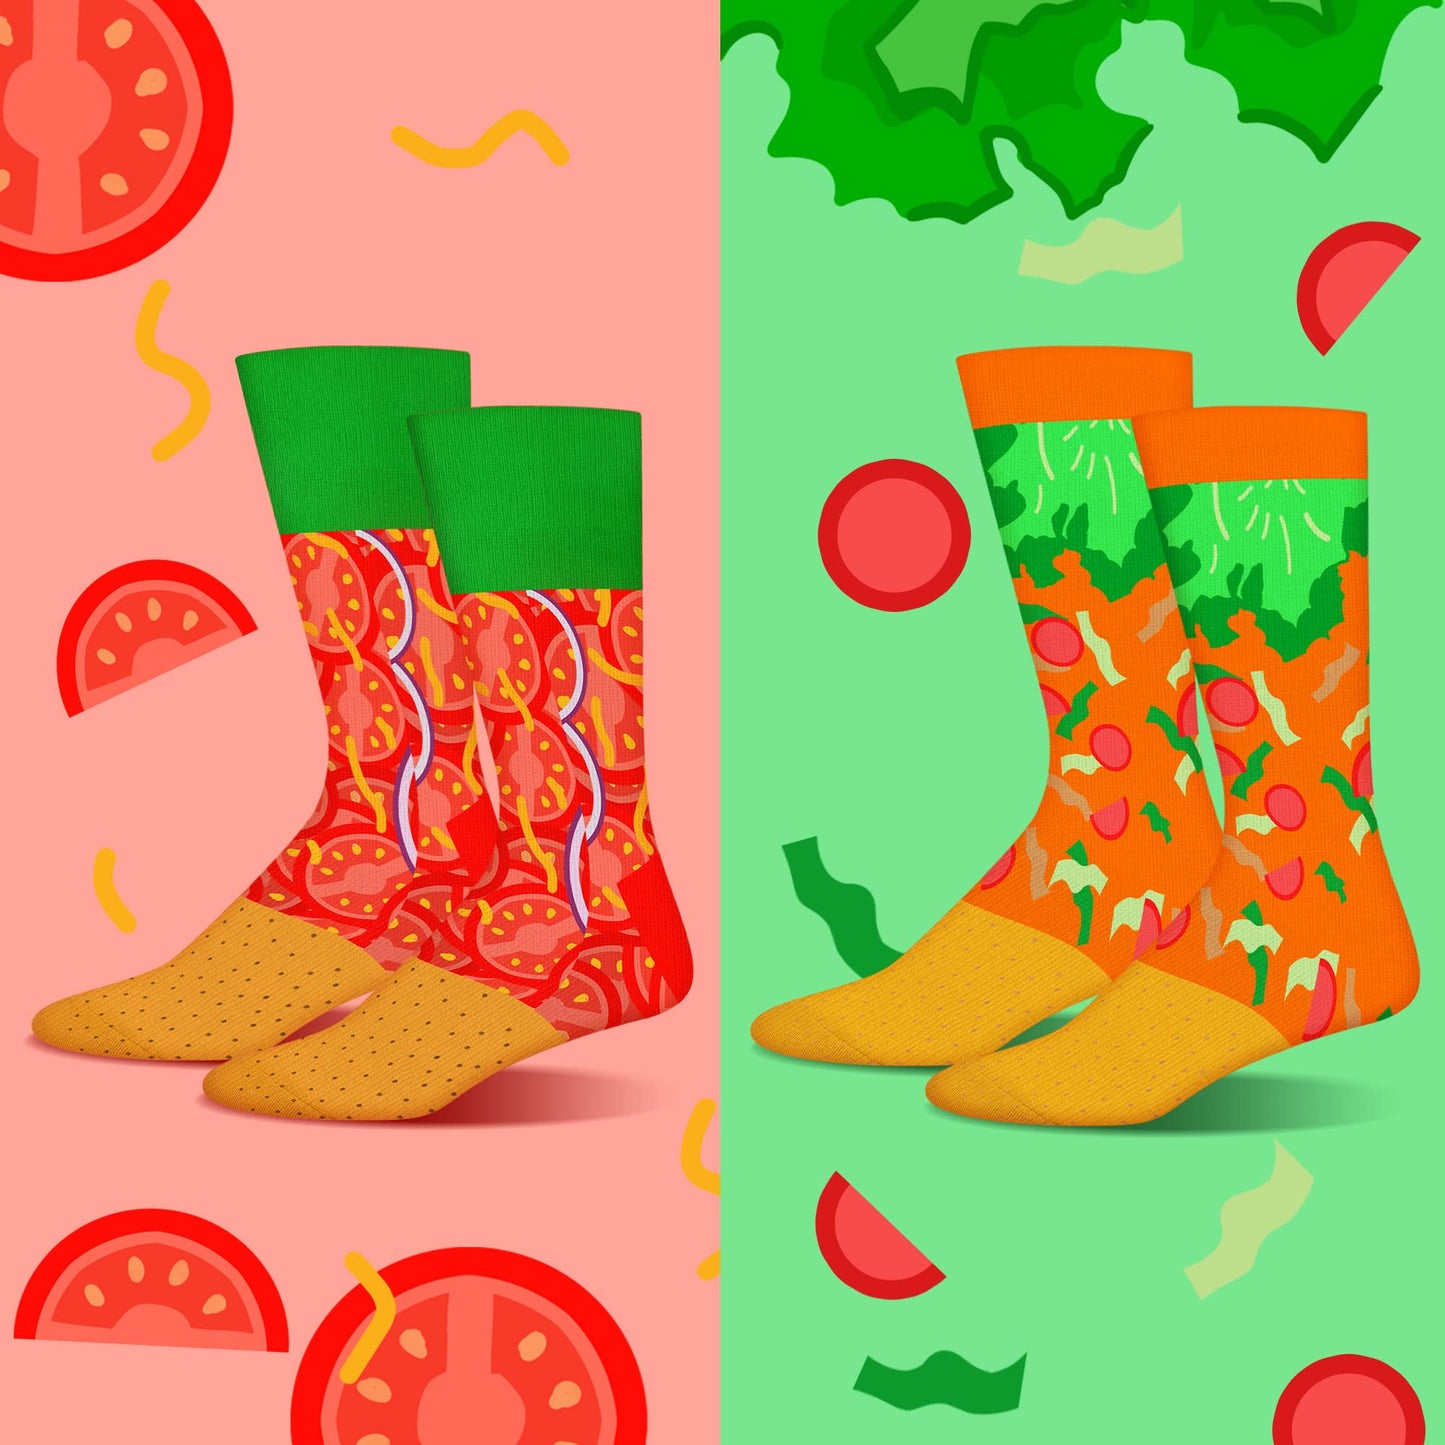 AGRIMONY Calcetines Taco Hombre Divertidos - Personalizados Originales Dibujos Estampados Graciosos Frikis Colores Arte Comida - Regalos Originales Navidad Cumpleanos para Adolescentes-2 pares